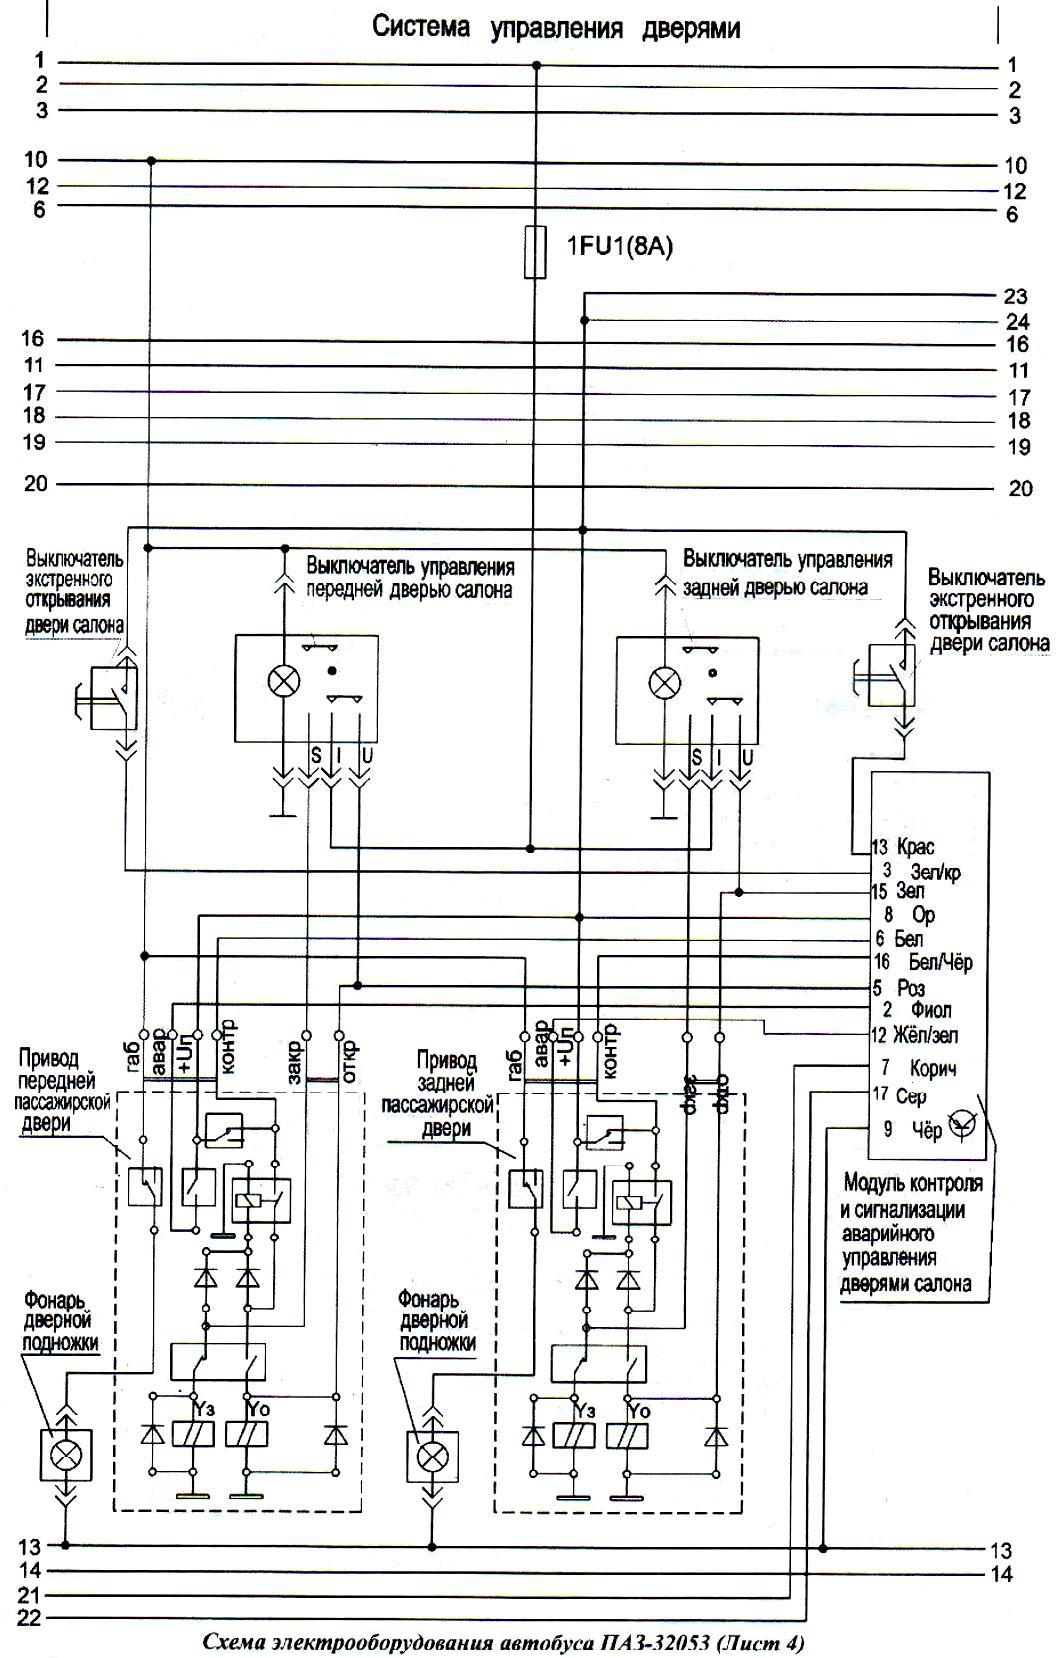 Схема системы управления дверями ПАЗ-32053